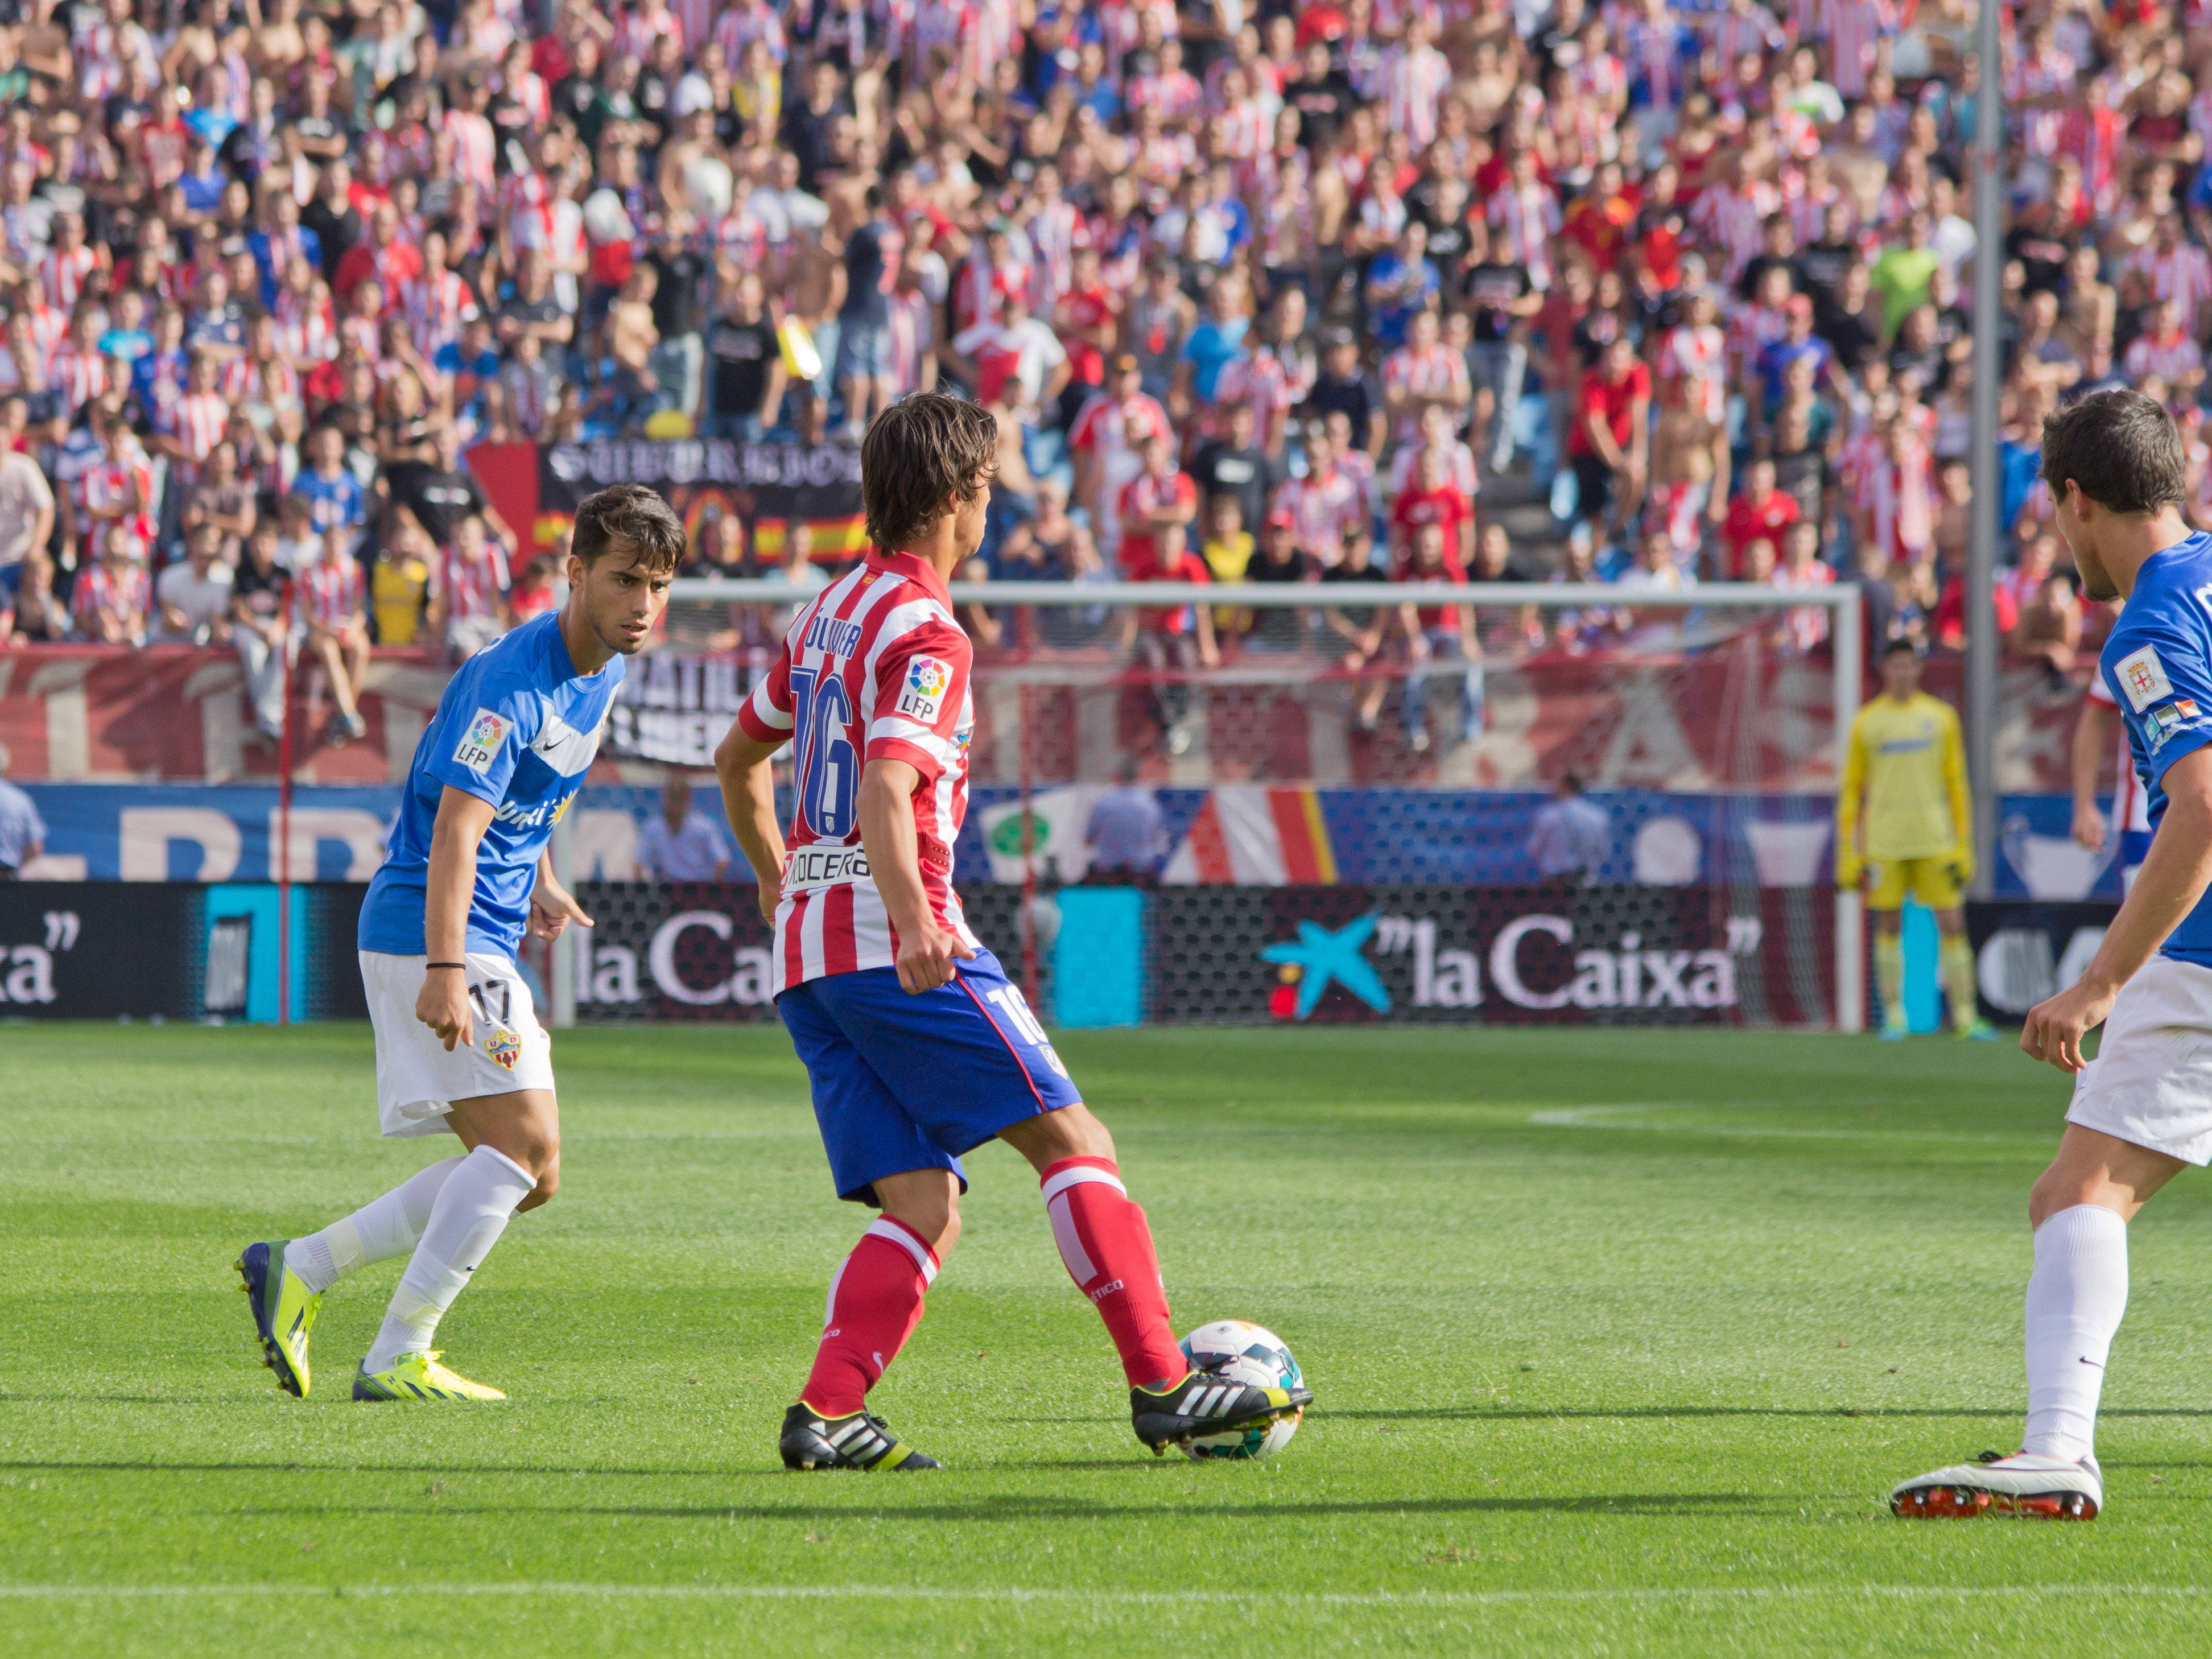 ファイル:Atlético de Madrid vs UD Almería - 14.jpg - Wikipedia